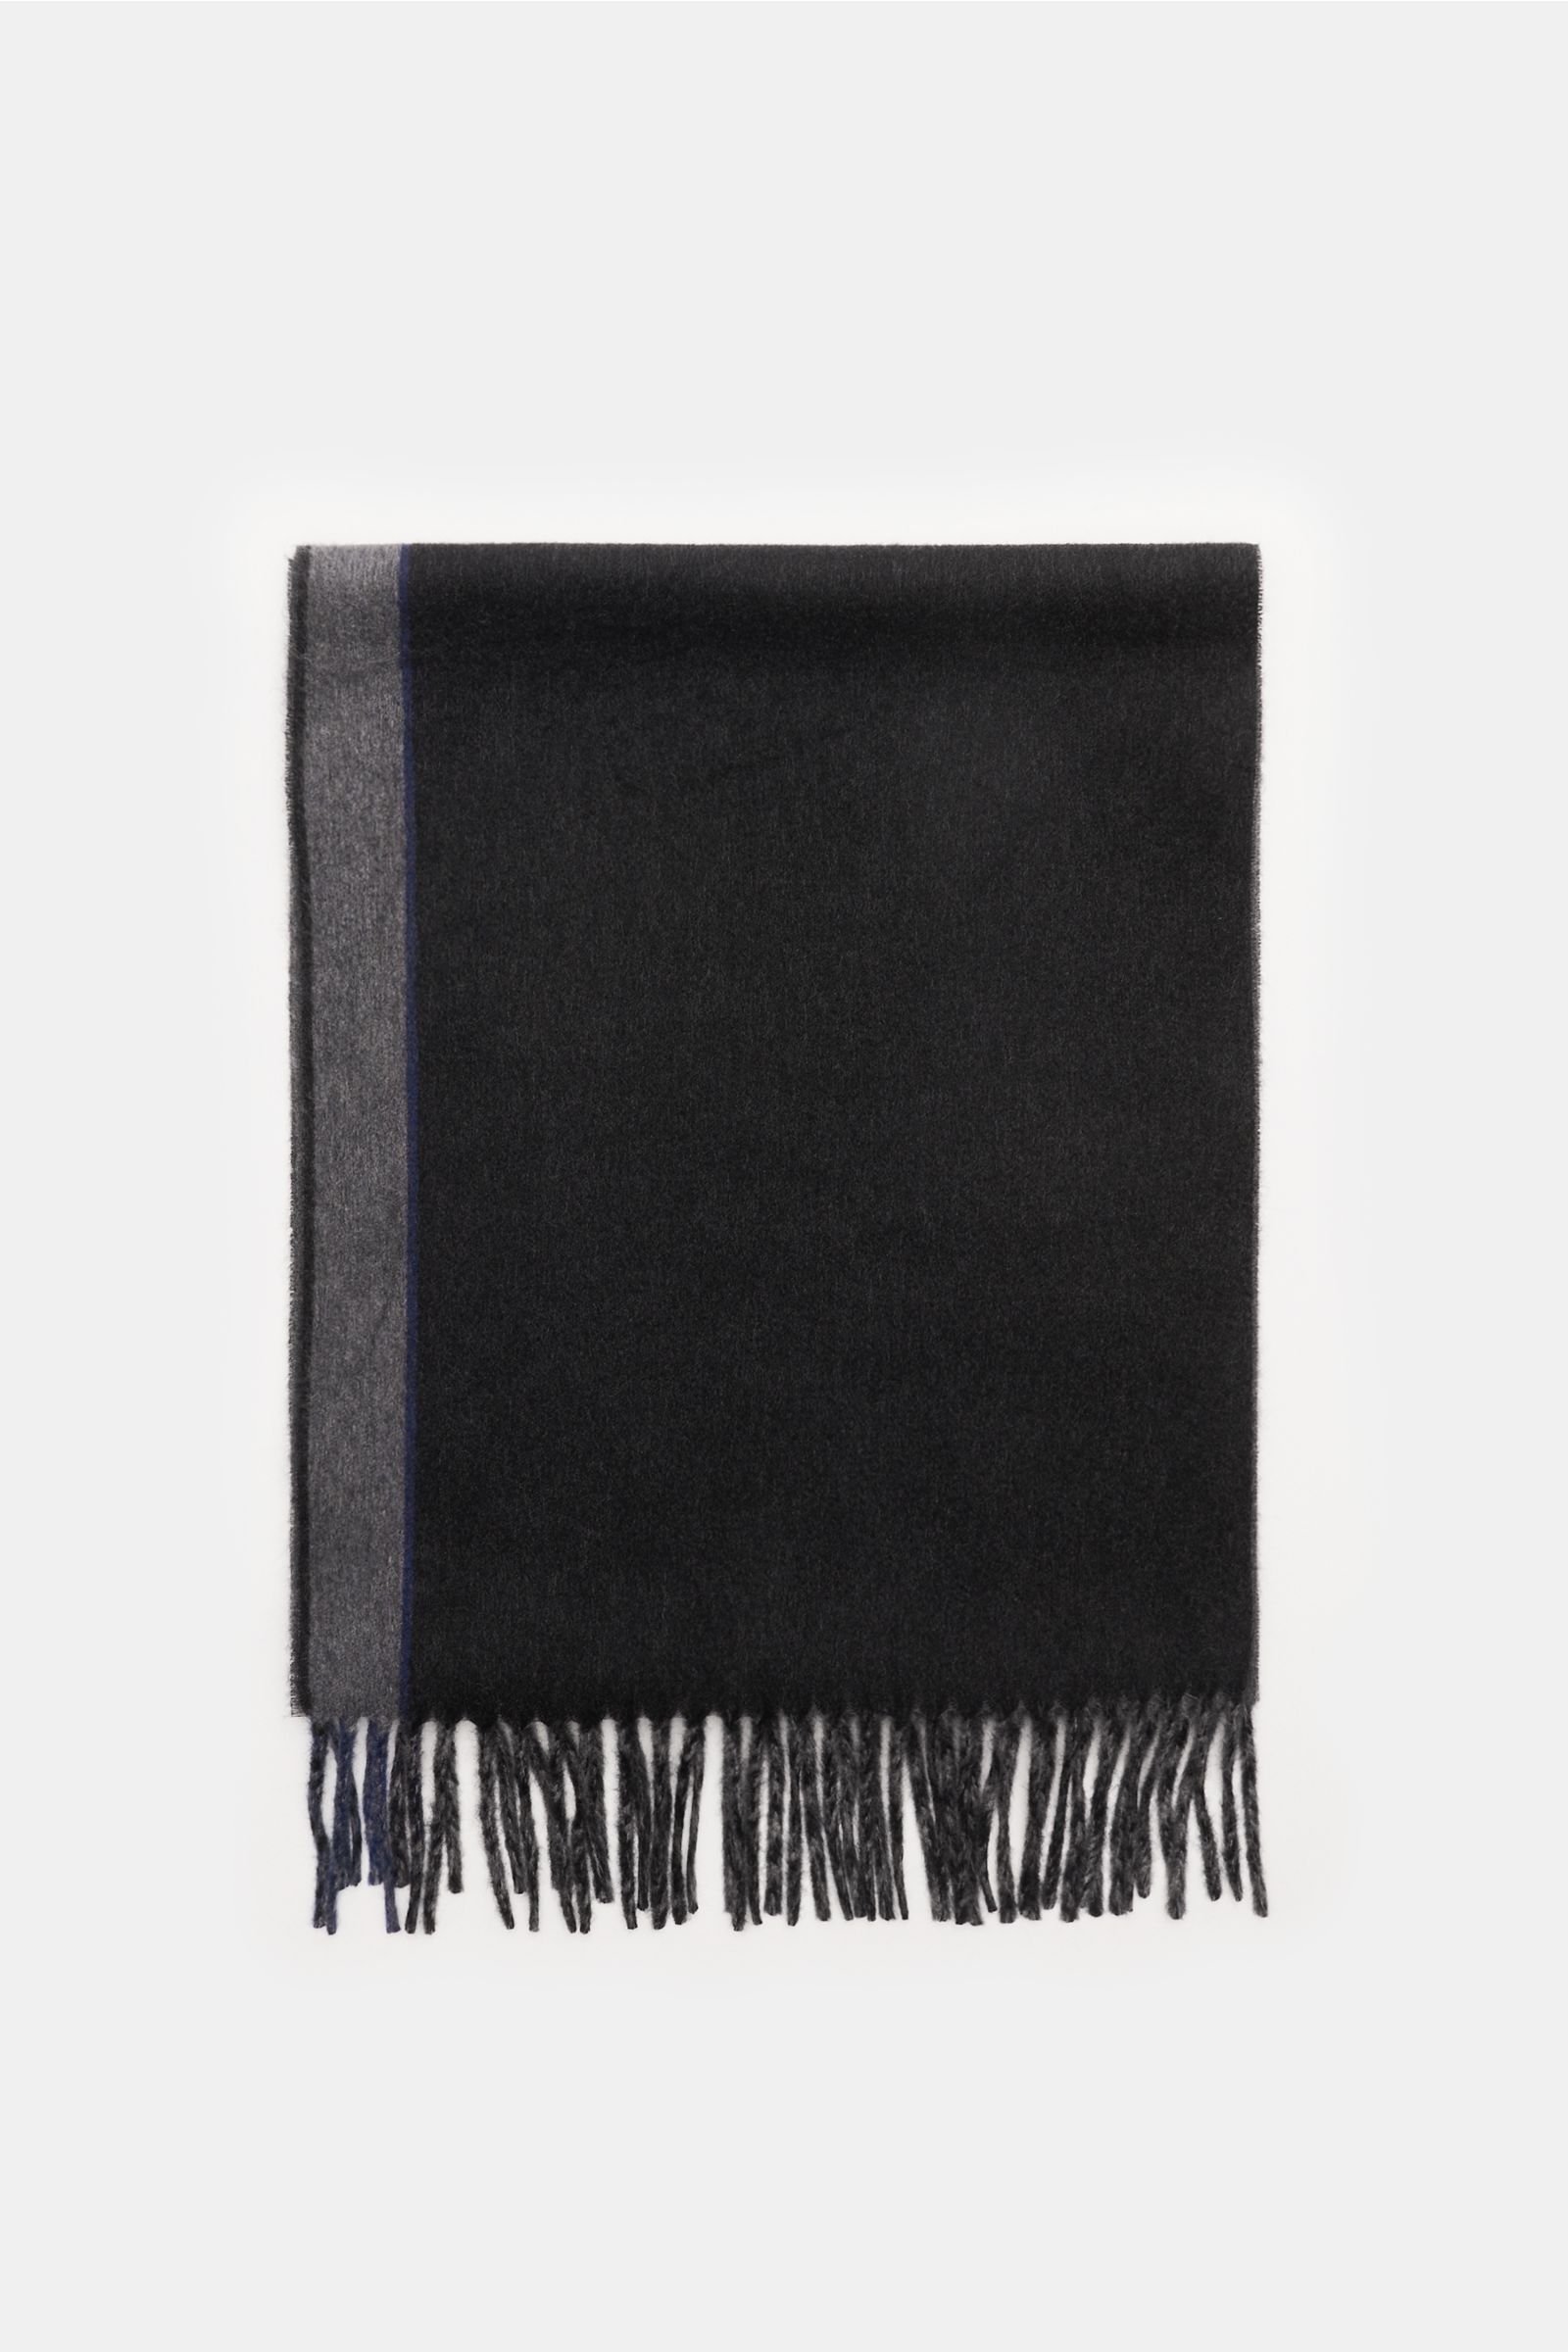 Cashmere scarf dark grey/dark navy